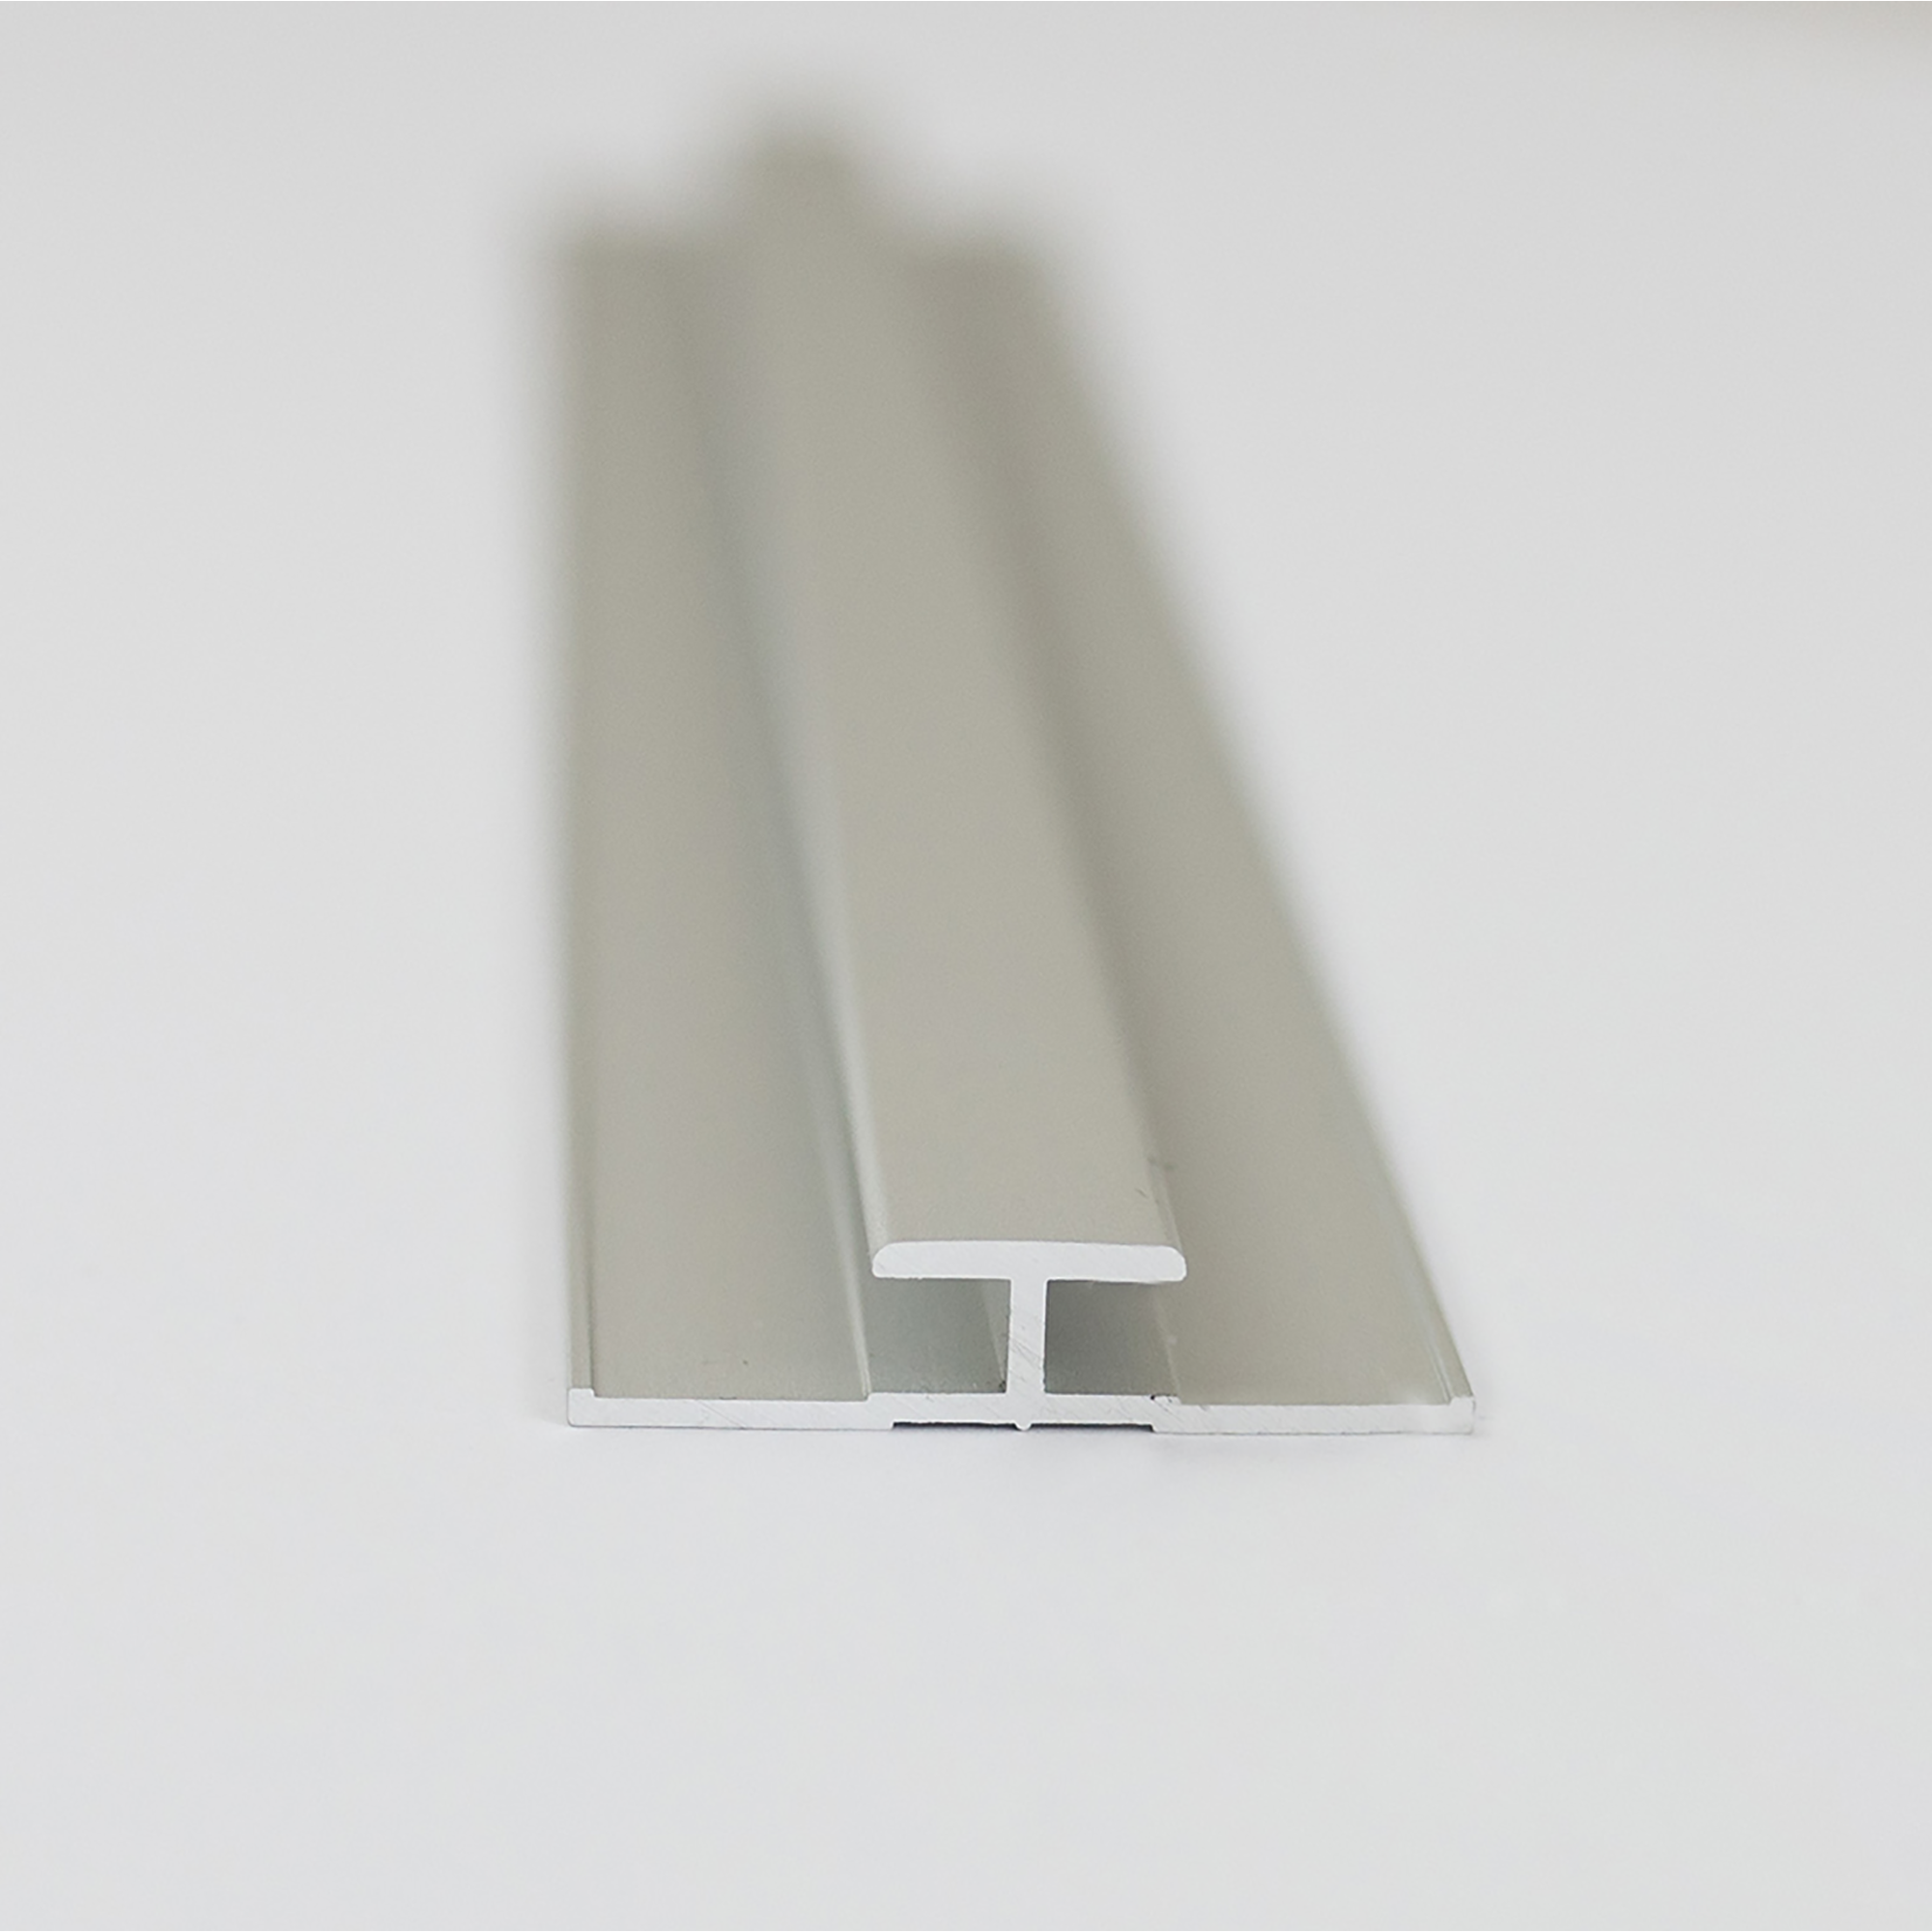 Verbindungsprofil für Rückwandplatten, alu silber matt, 2100 mm + product picture